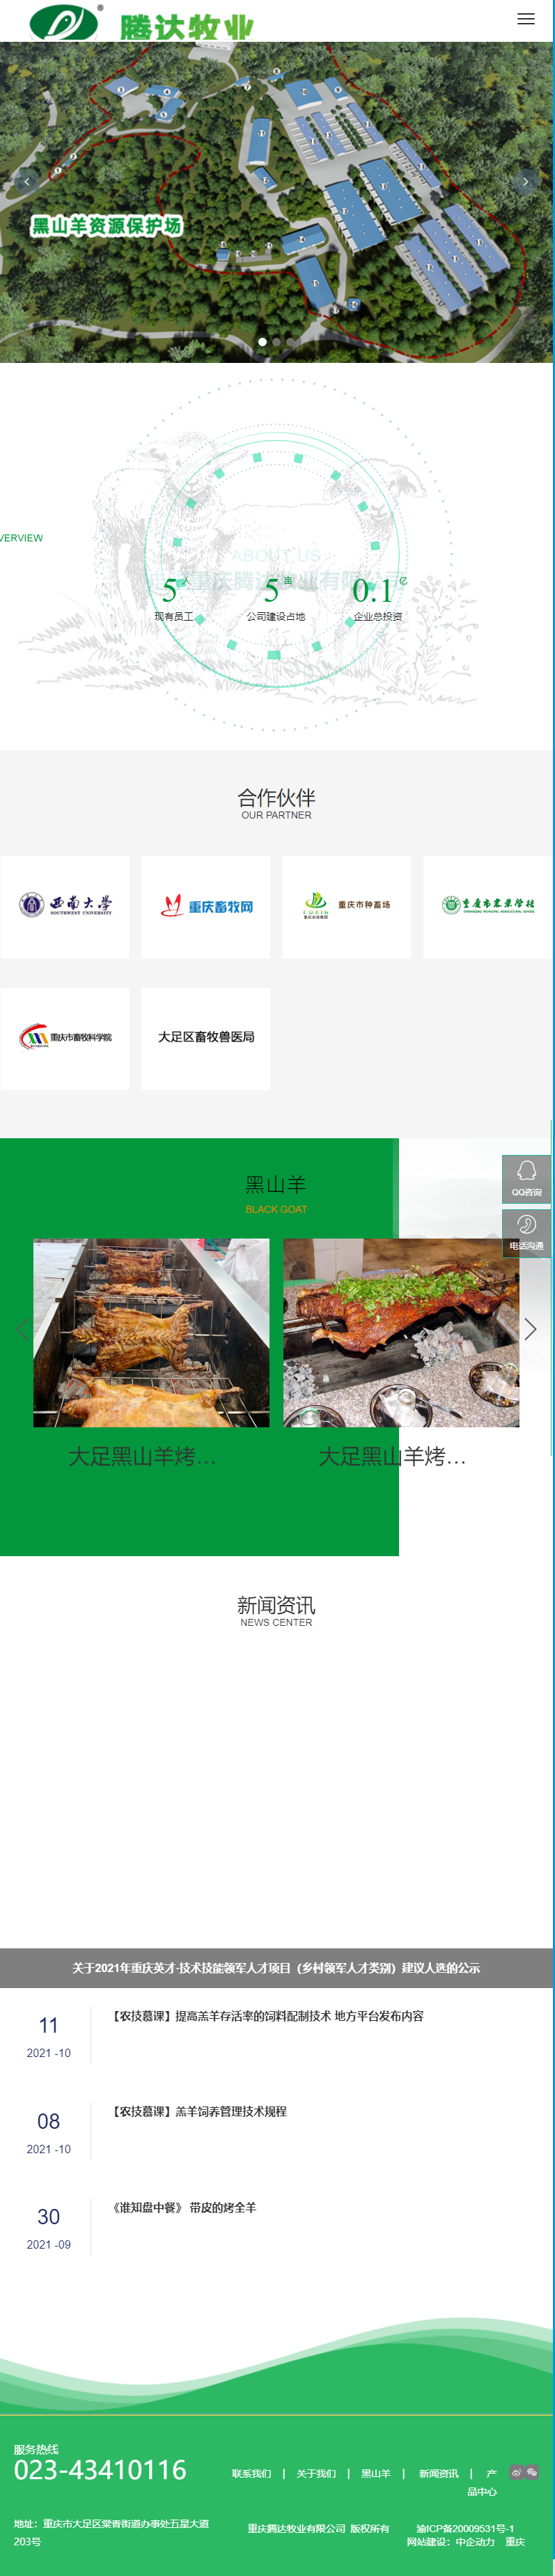 重庆腾达牧业有限公司网站案例